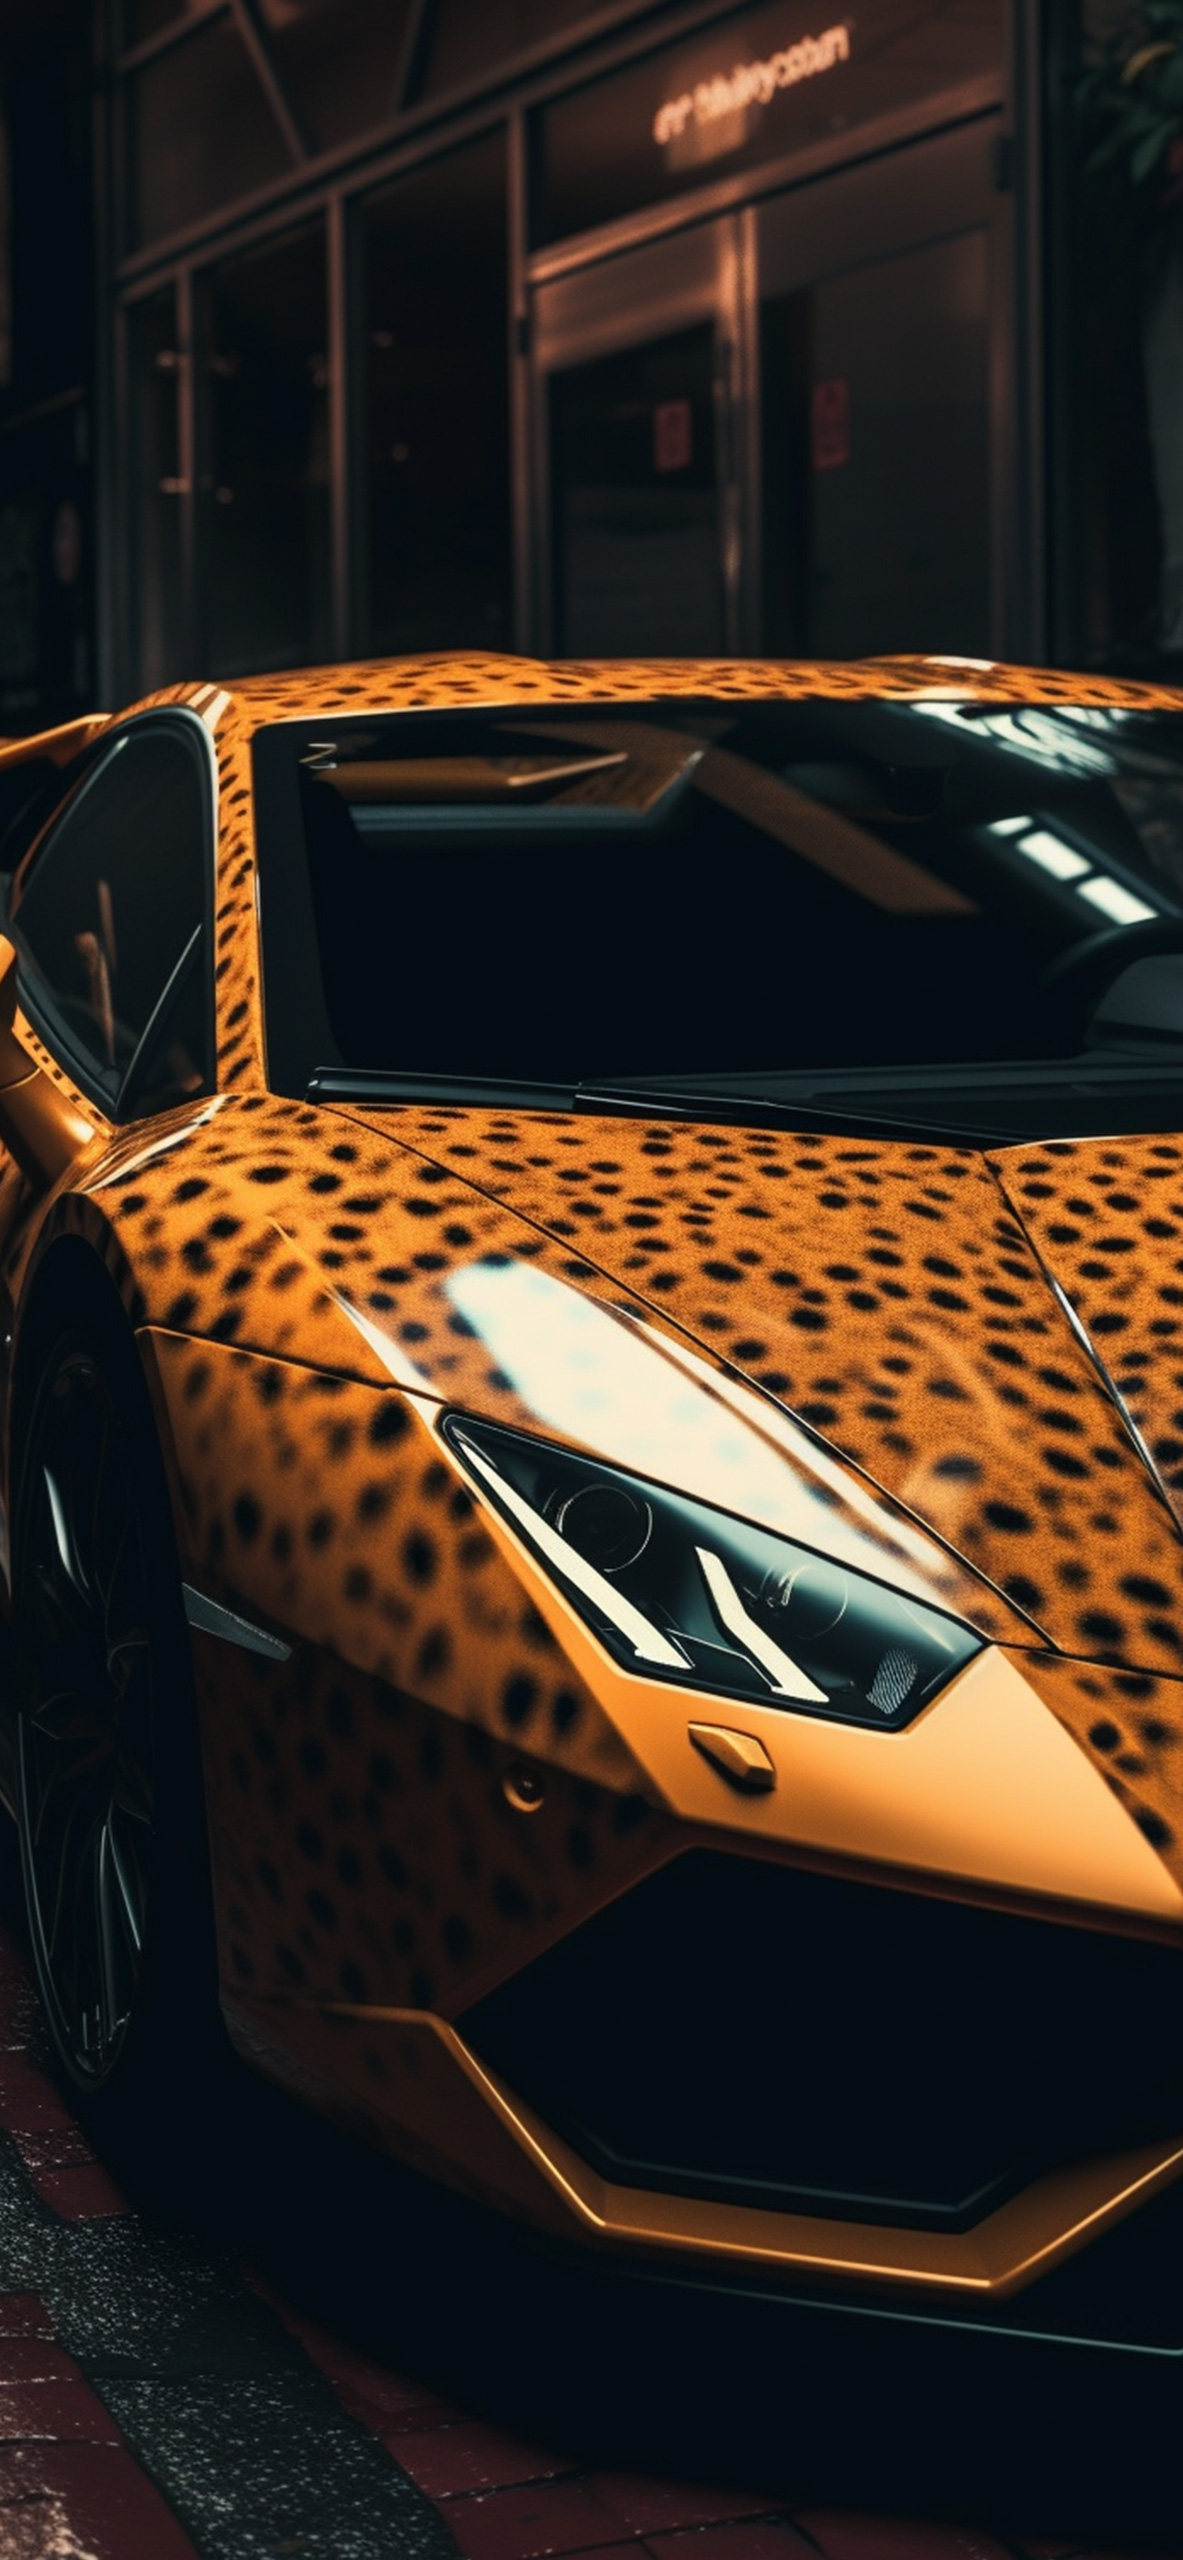 Leopard Lamborghini Murcielago Wallpaper Lamborghini Wallpaper